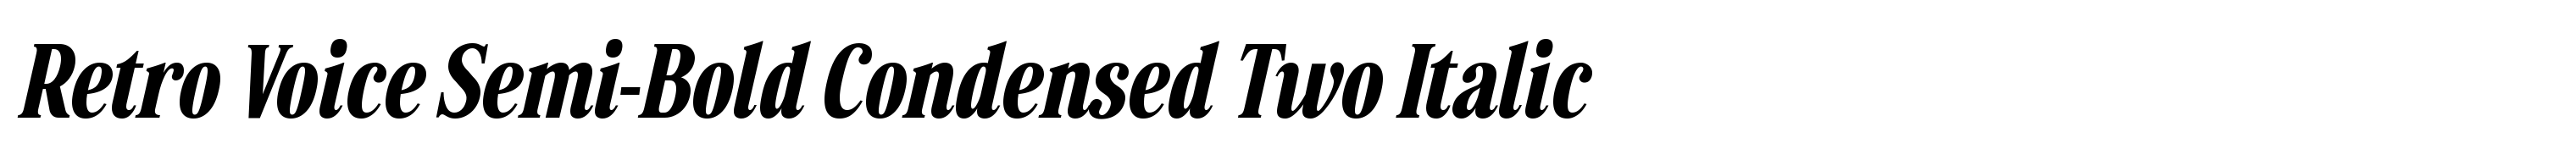 Retro Voice Semi-Bold Condensed Two Italic